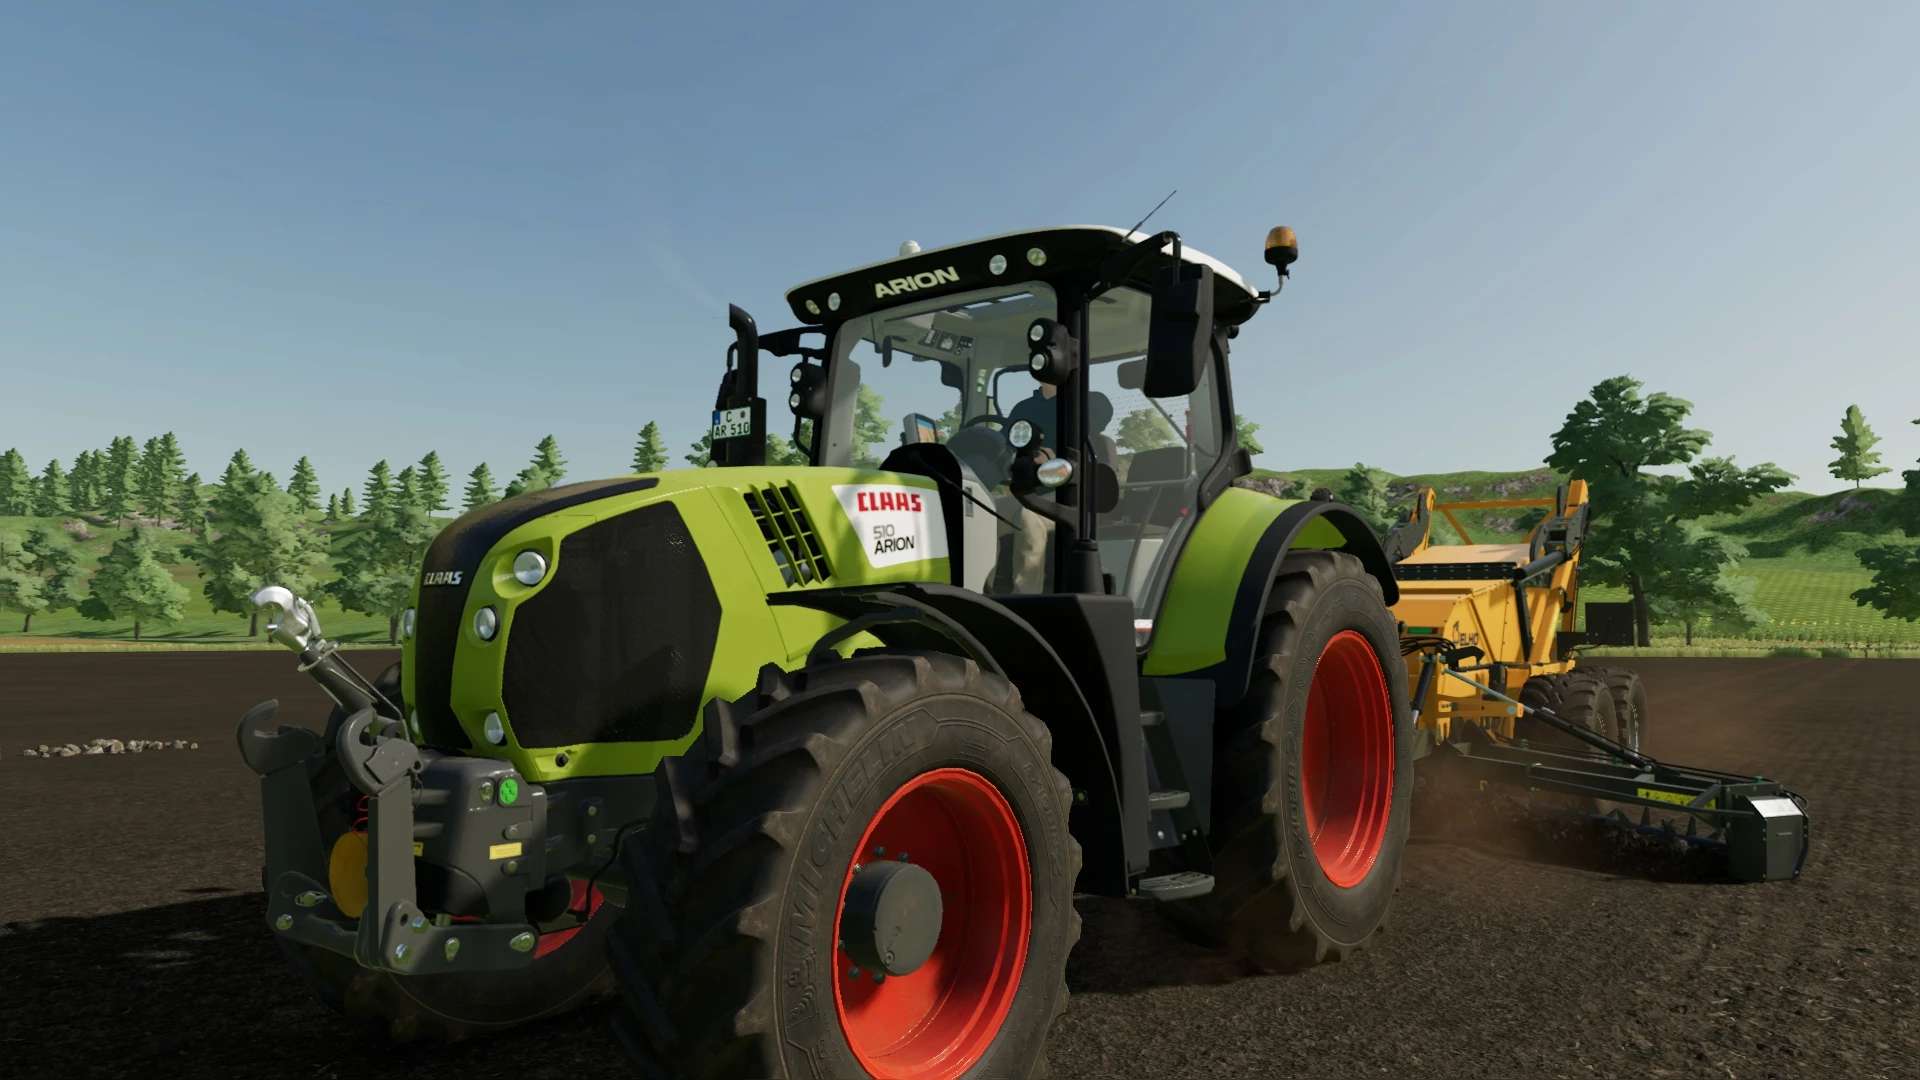 Claas Arion 550 510 V10 Fs22 Farming Simulator 22 Mod Fs22 Mod 0812